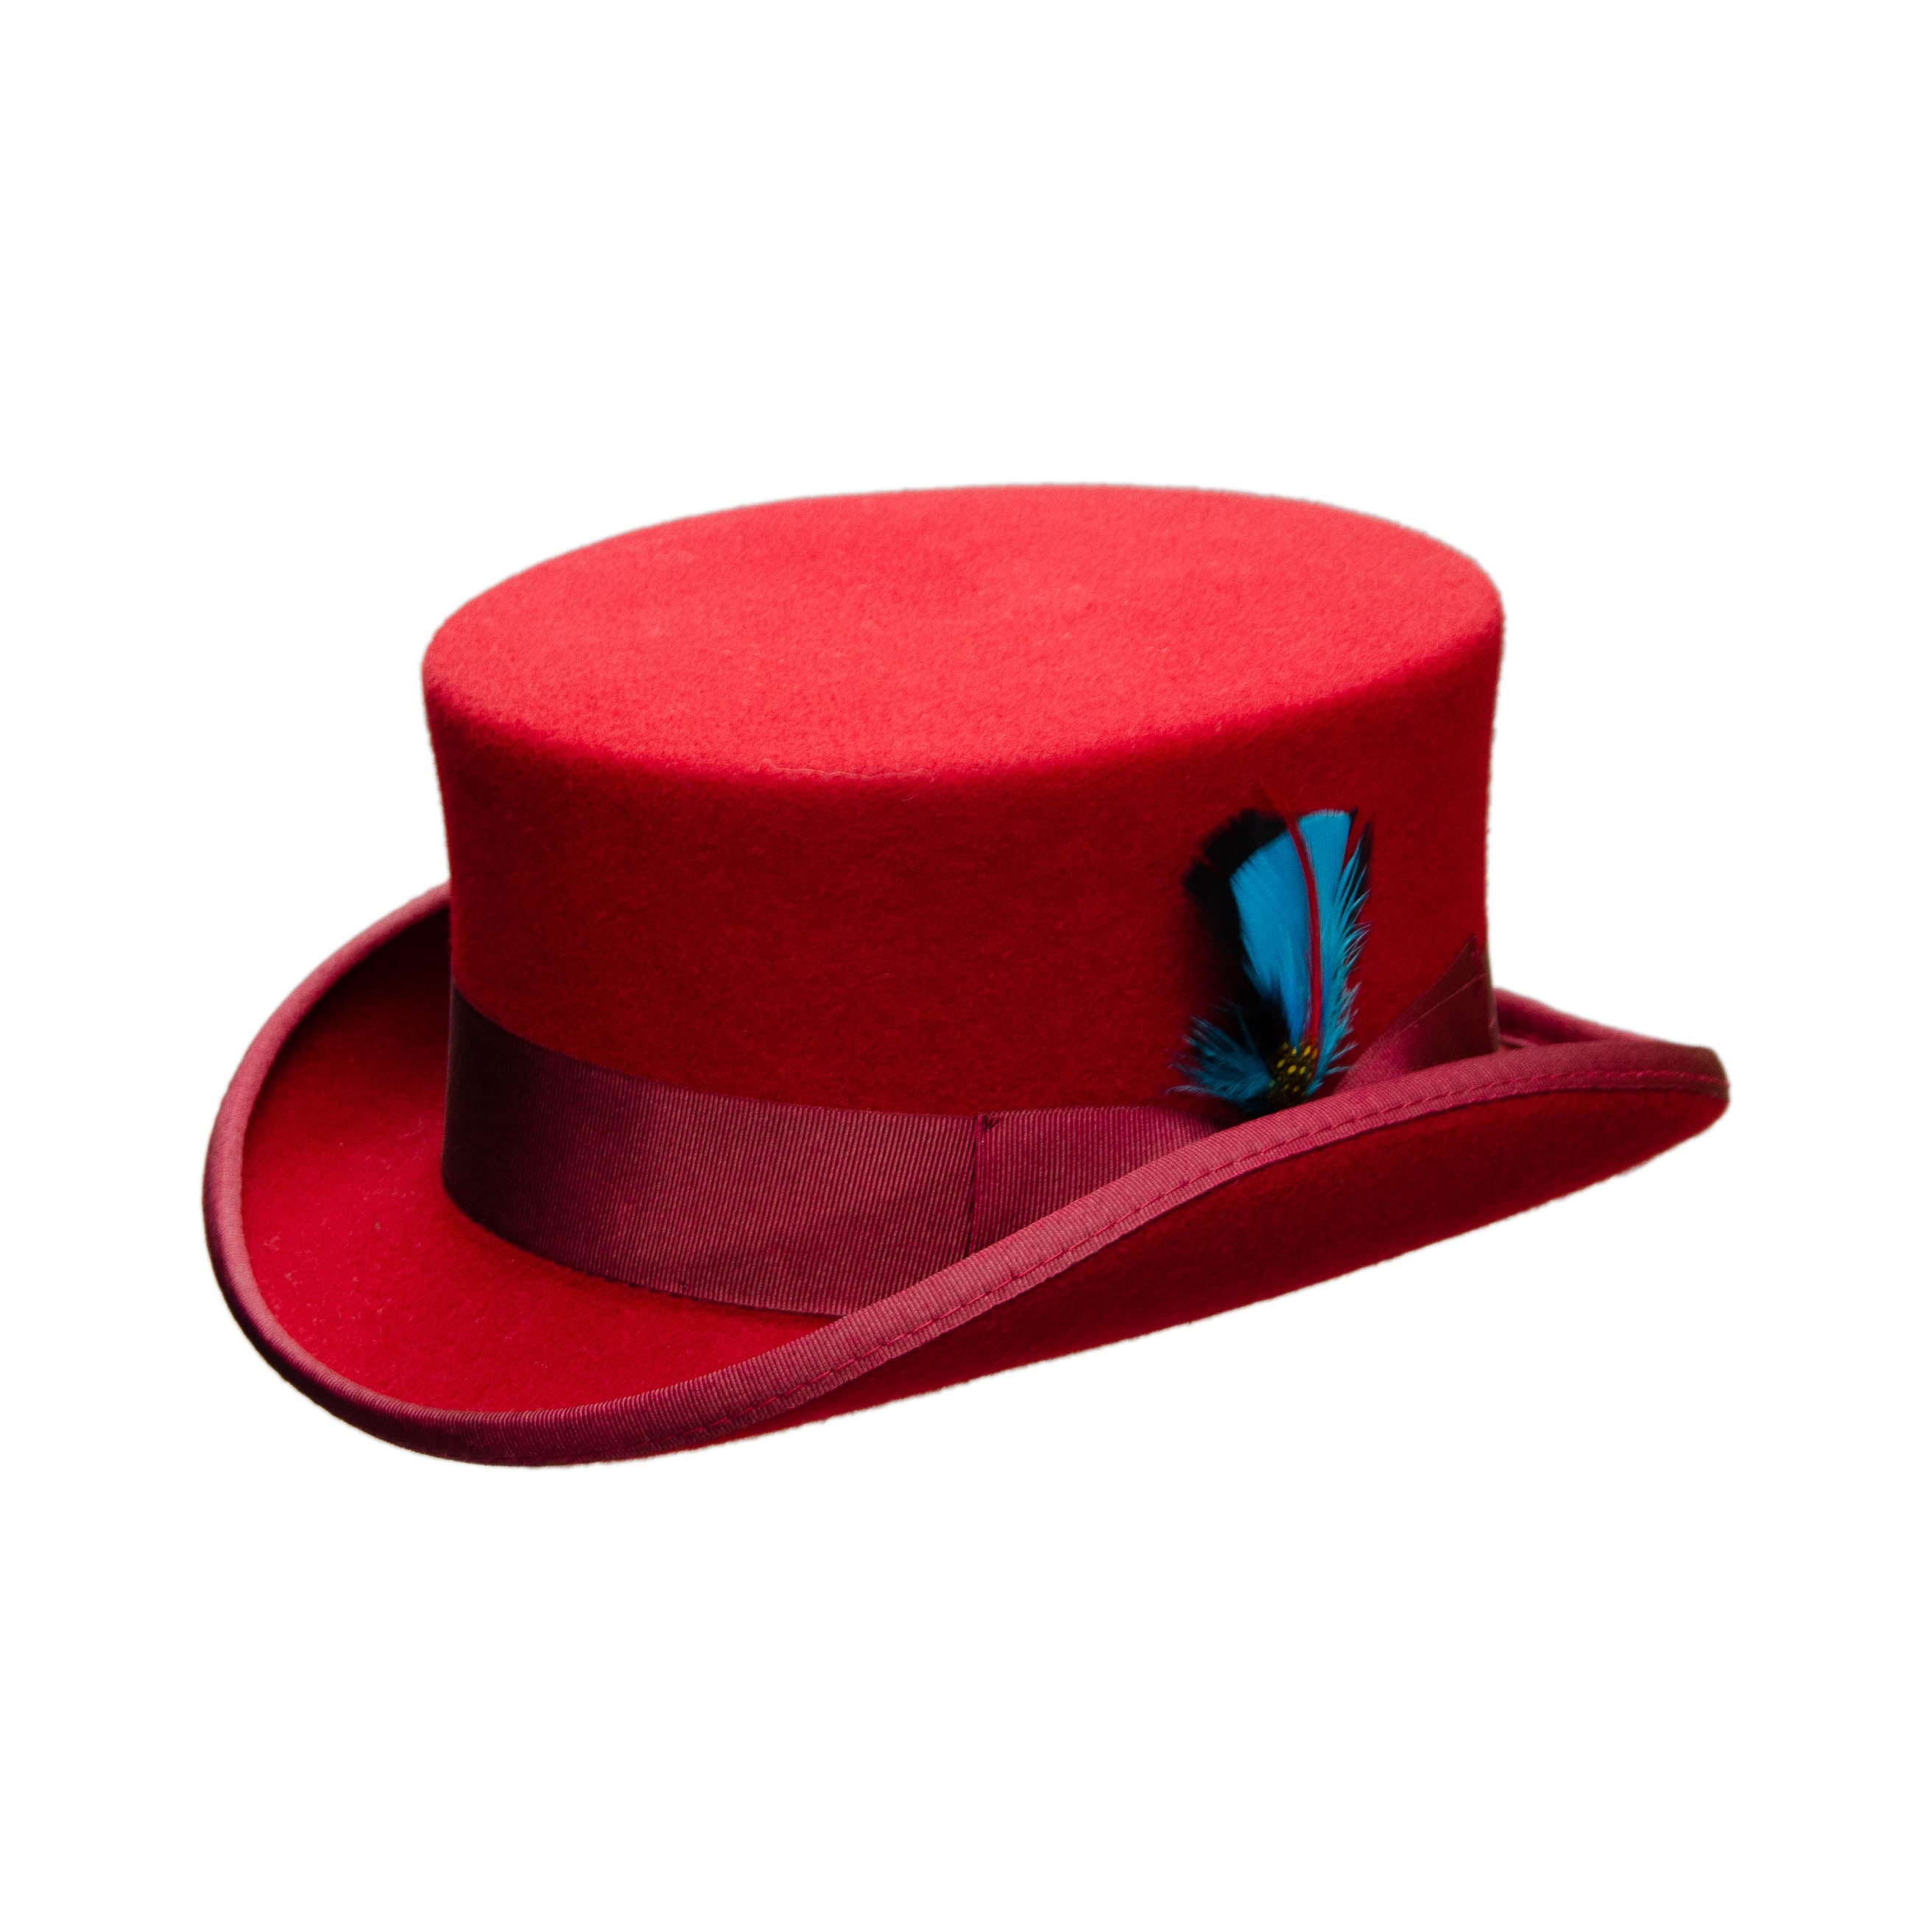 Topper Jr. | Wool Top Hat